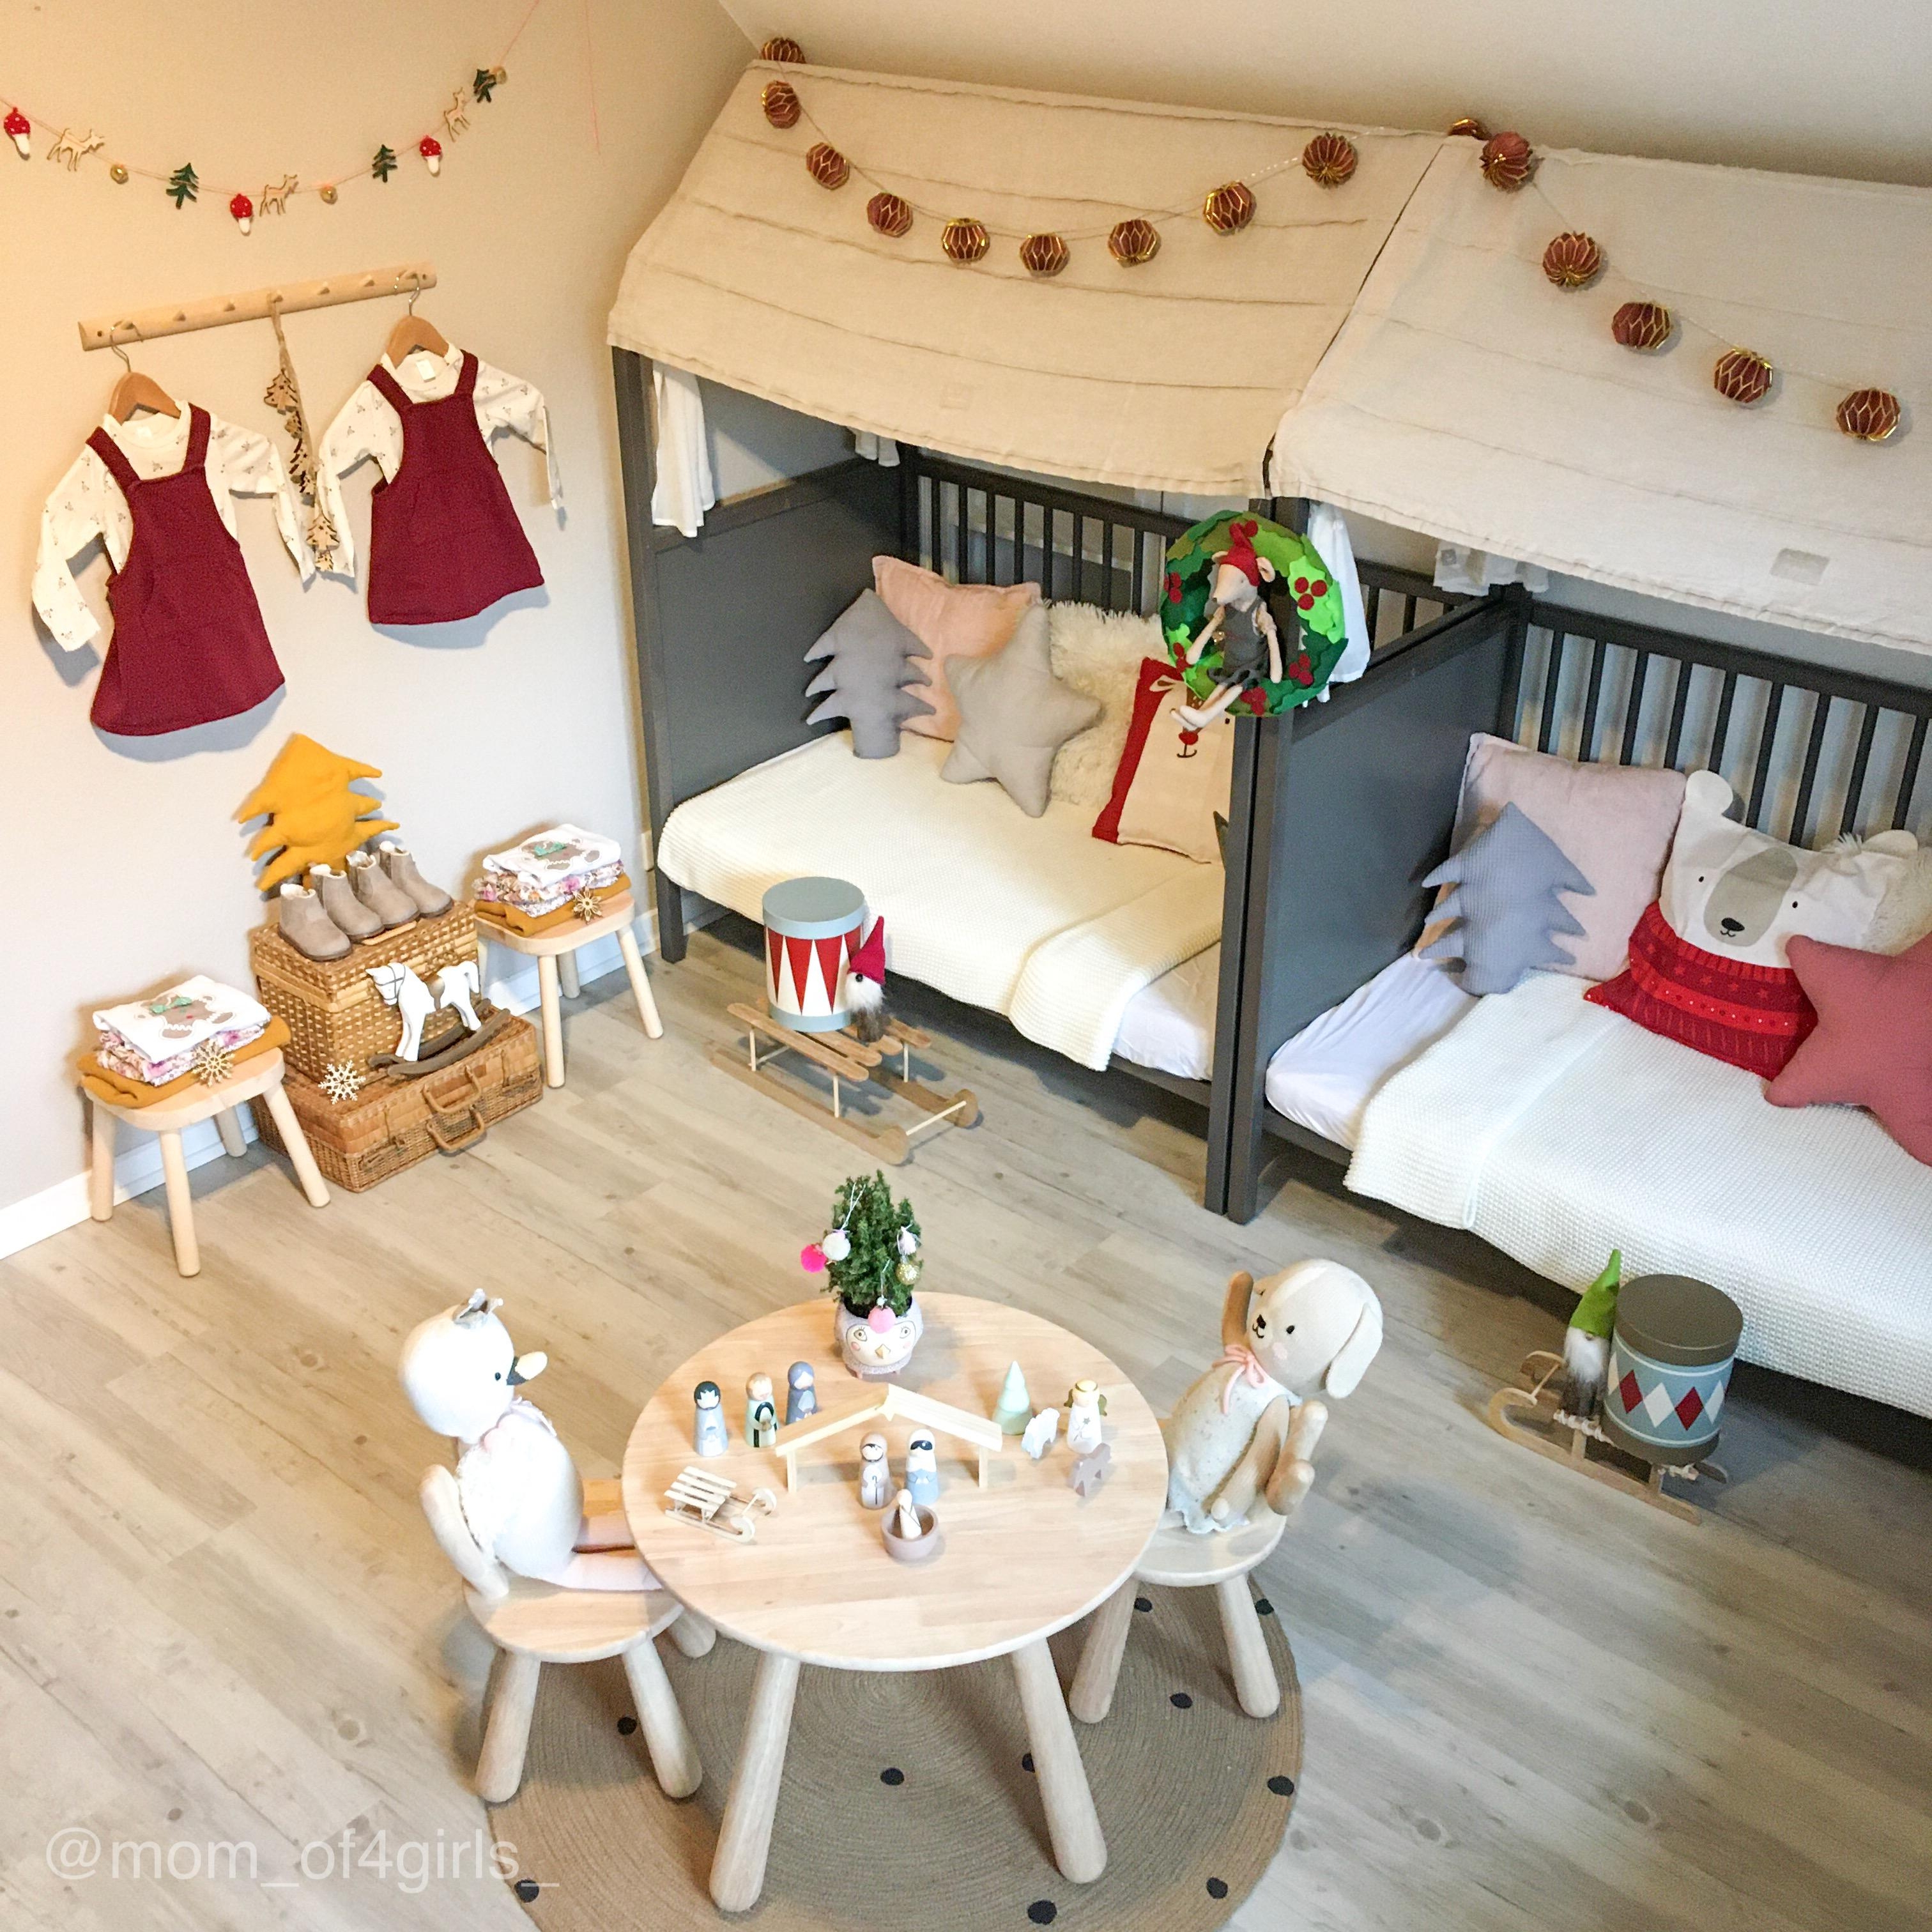 #twinsroom #sharedroom #kinderzimmer #kidsroom #weihnachtlich #weihnachtsdeko #kleinkindzimmer